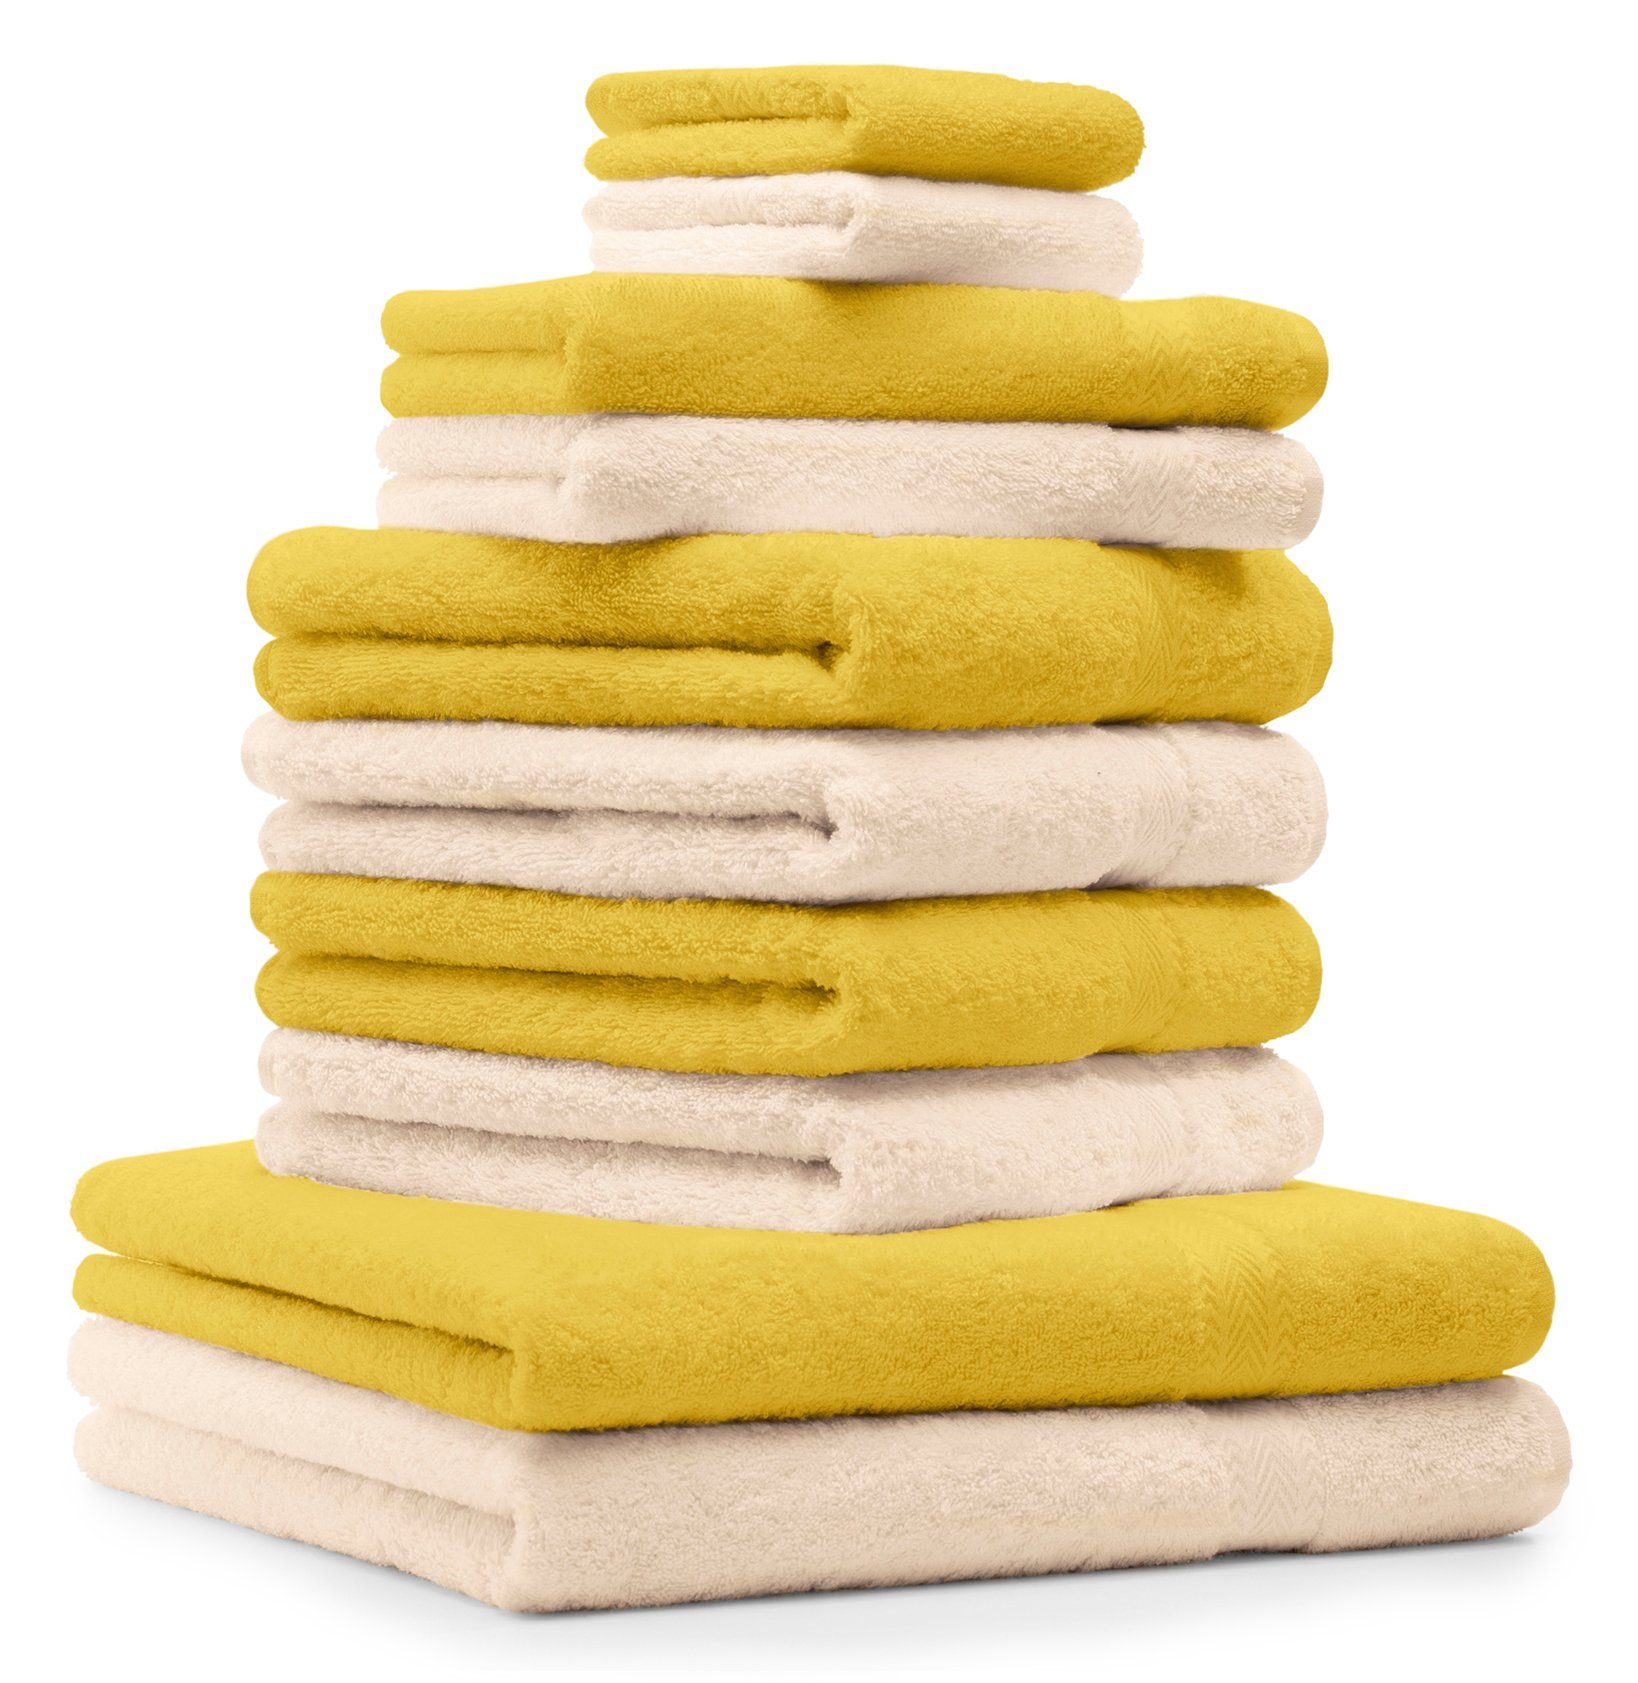 Betz Handtuch Set 10-TLG. Handtuch-Set Premium Farbe Gelb & Beige, 100% Baumwolle, (10-tlg)